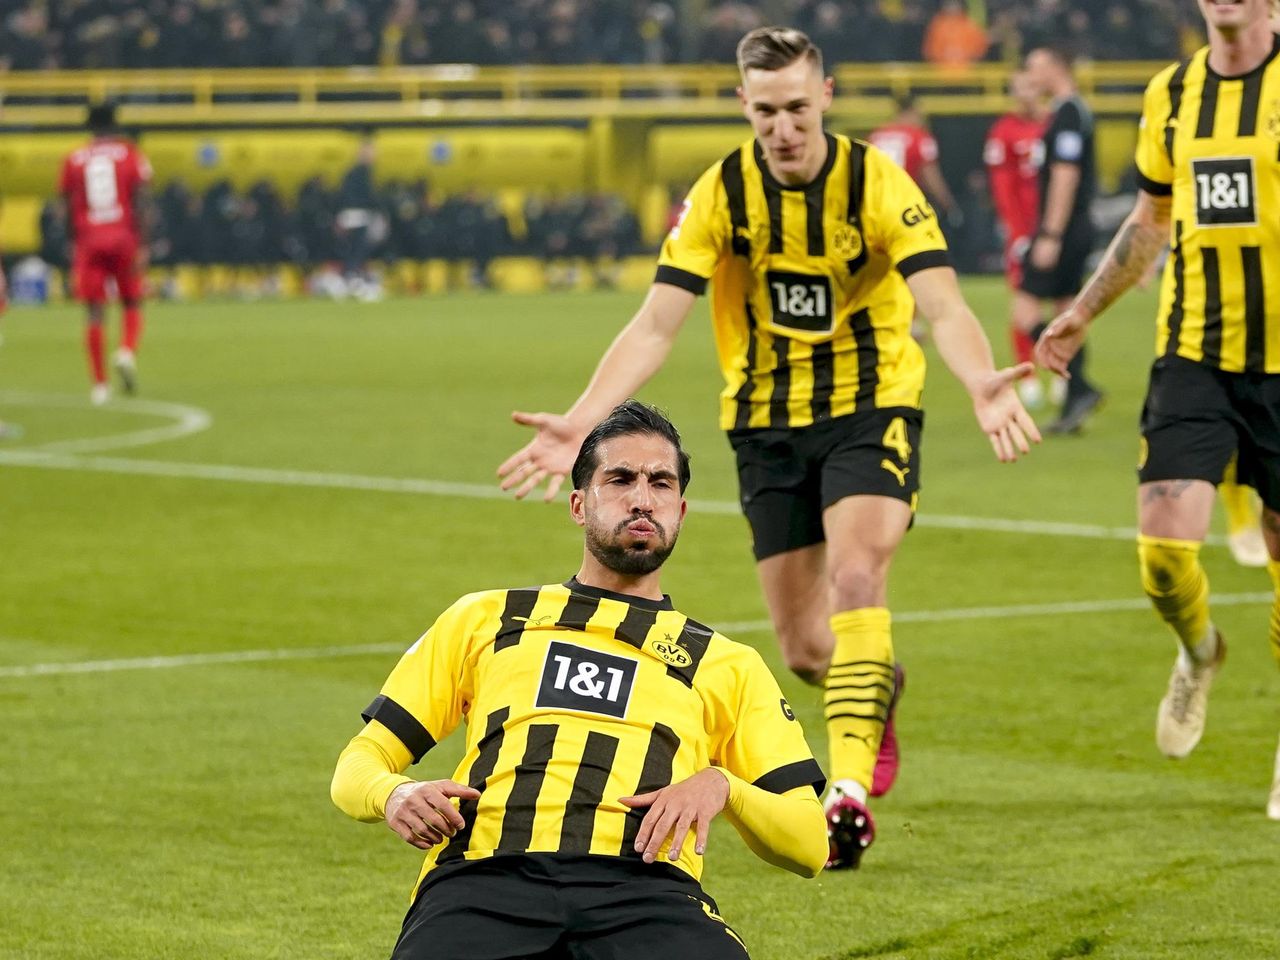 Borussia Dortmund 2-1 RB Leipzig: Reus and Emre goals fire BVB to top Bundesliga - Eurosport